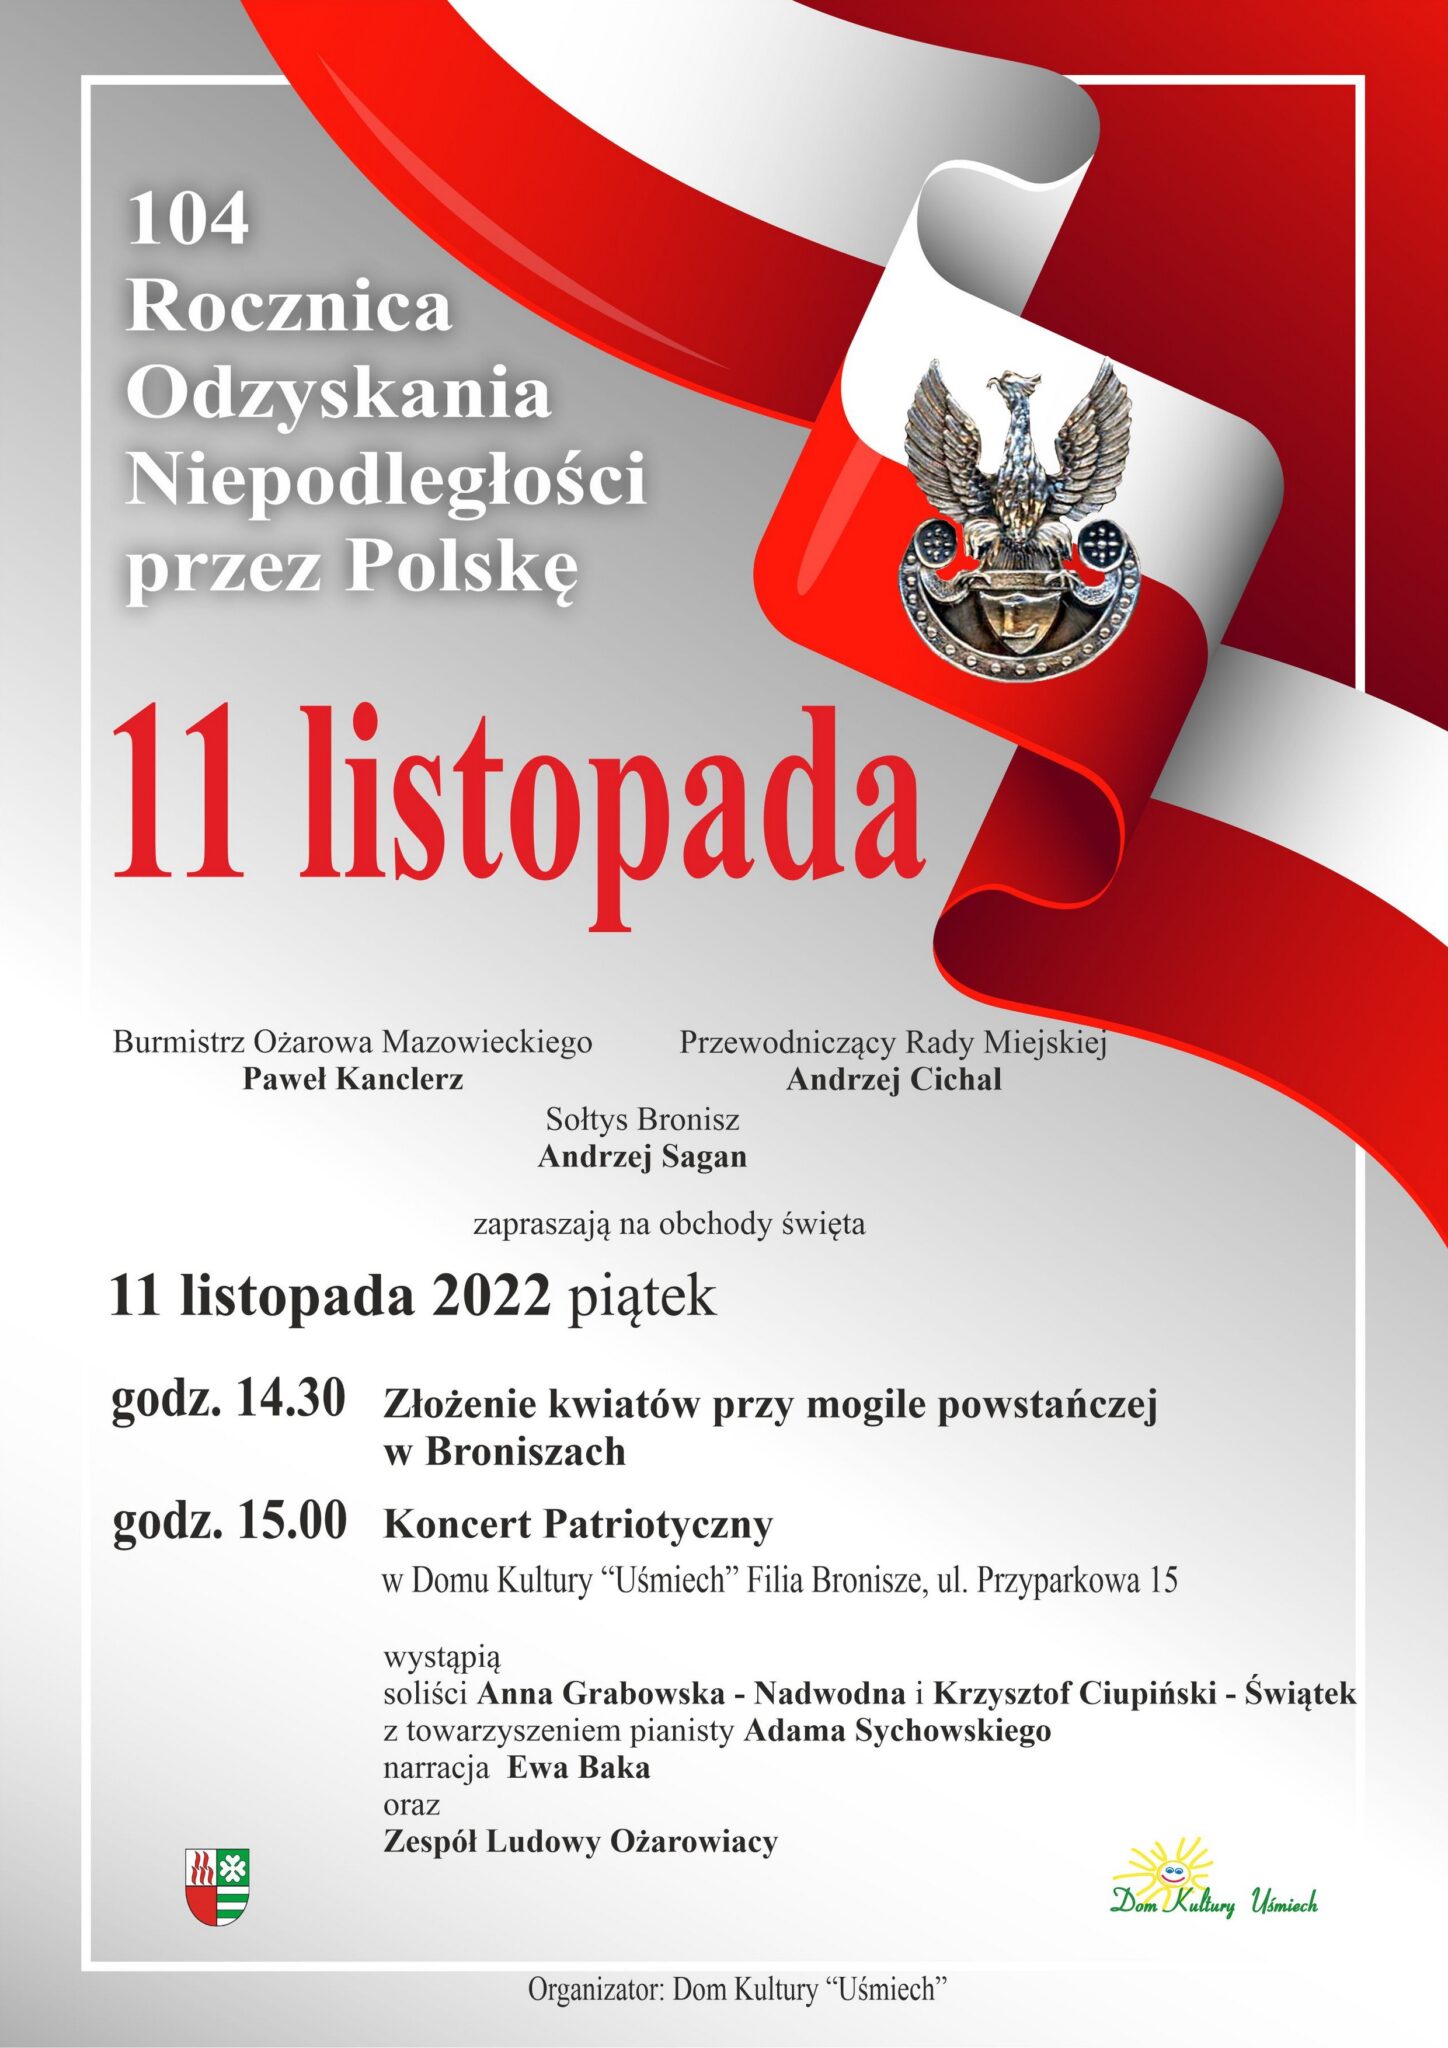 Plakat informujący o wydarzeniach 11 listopada w Broniszach